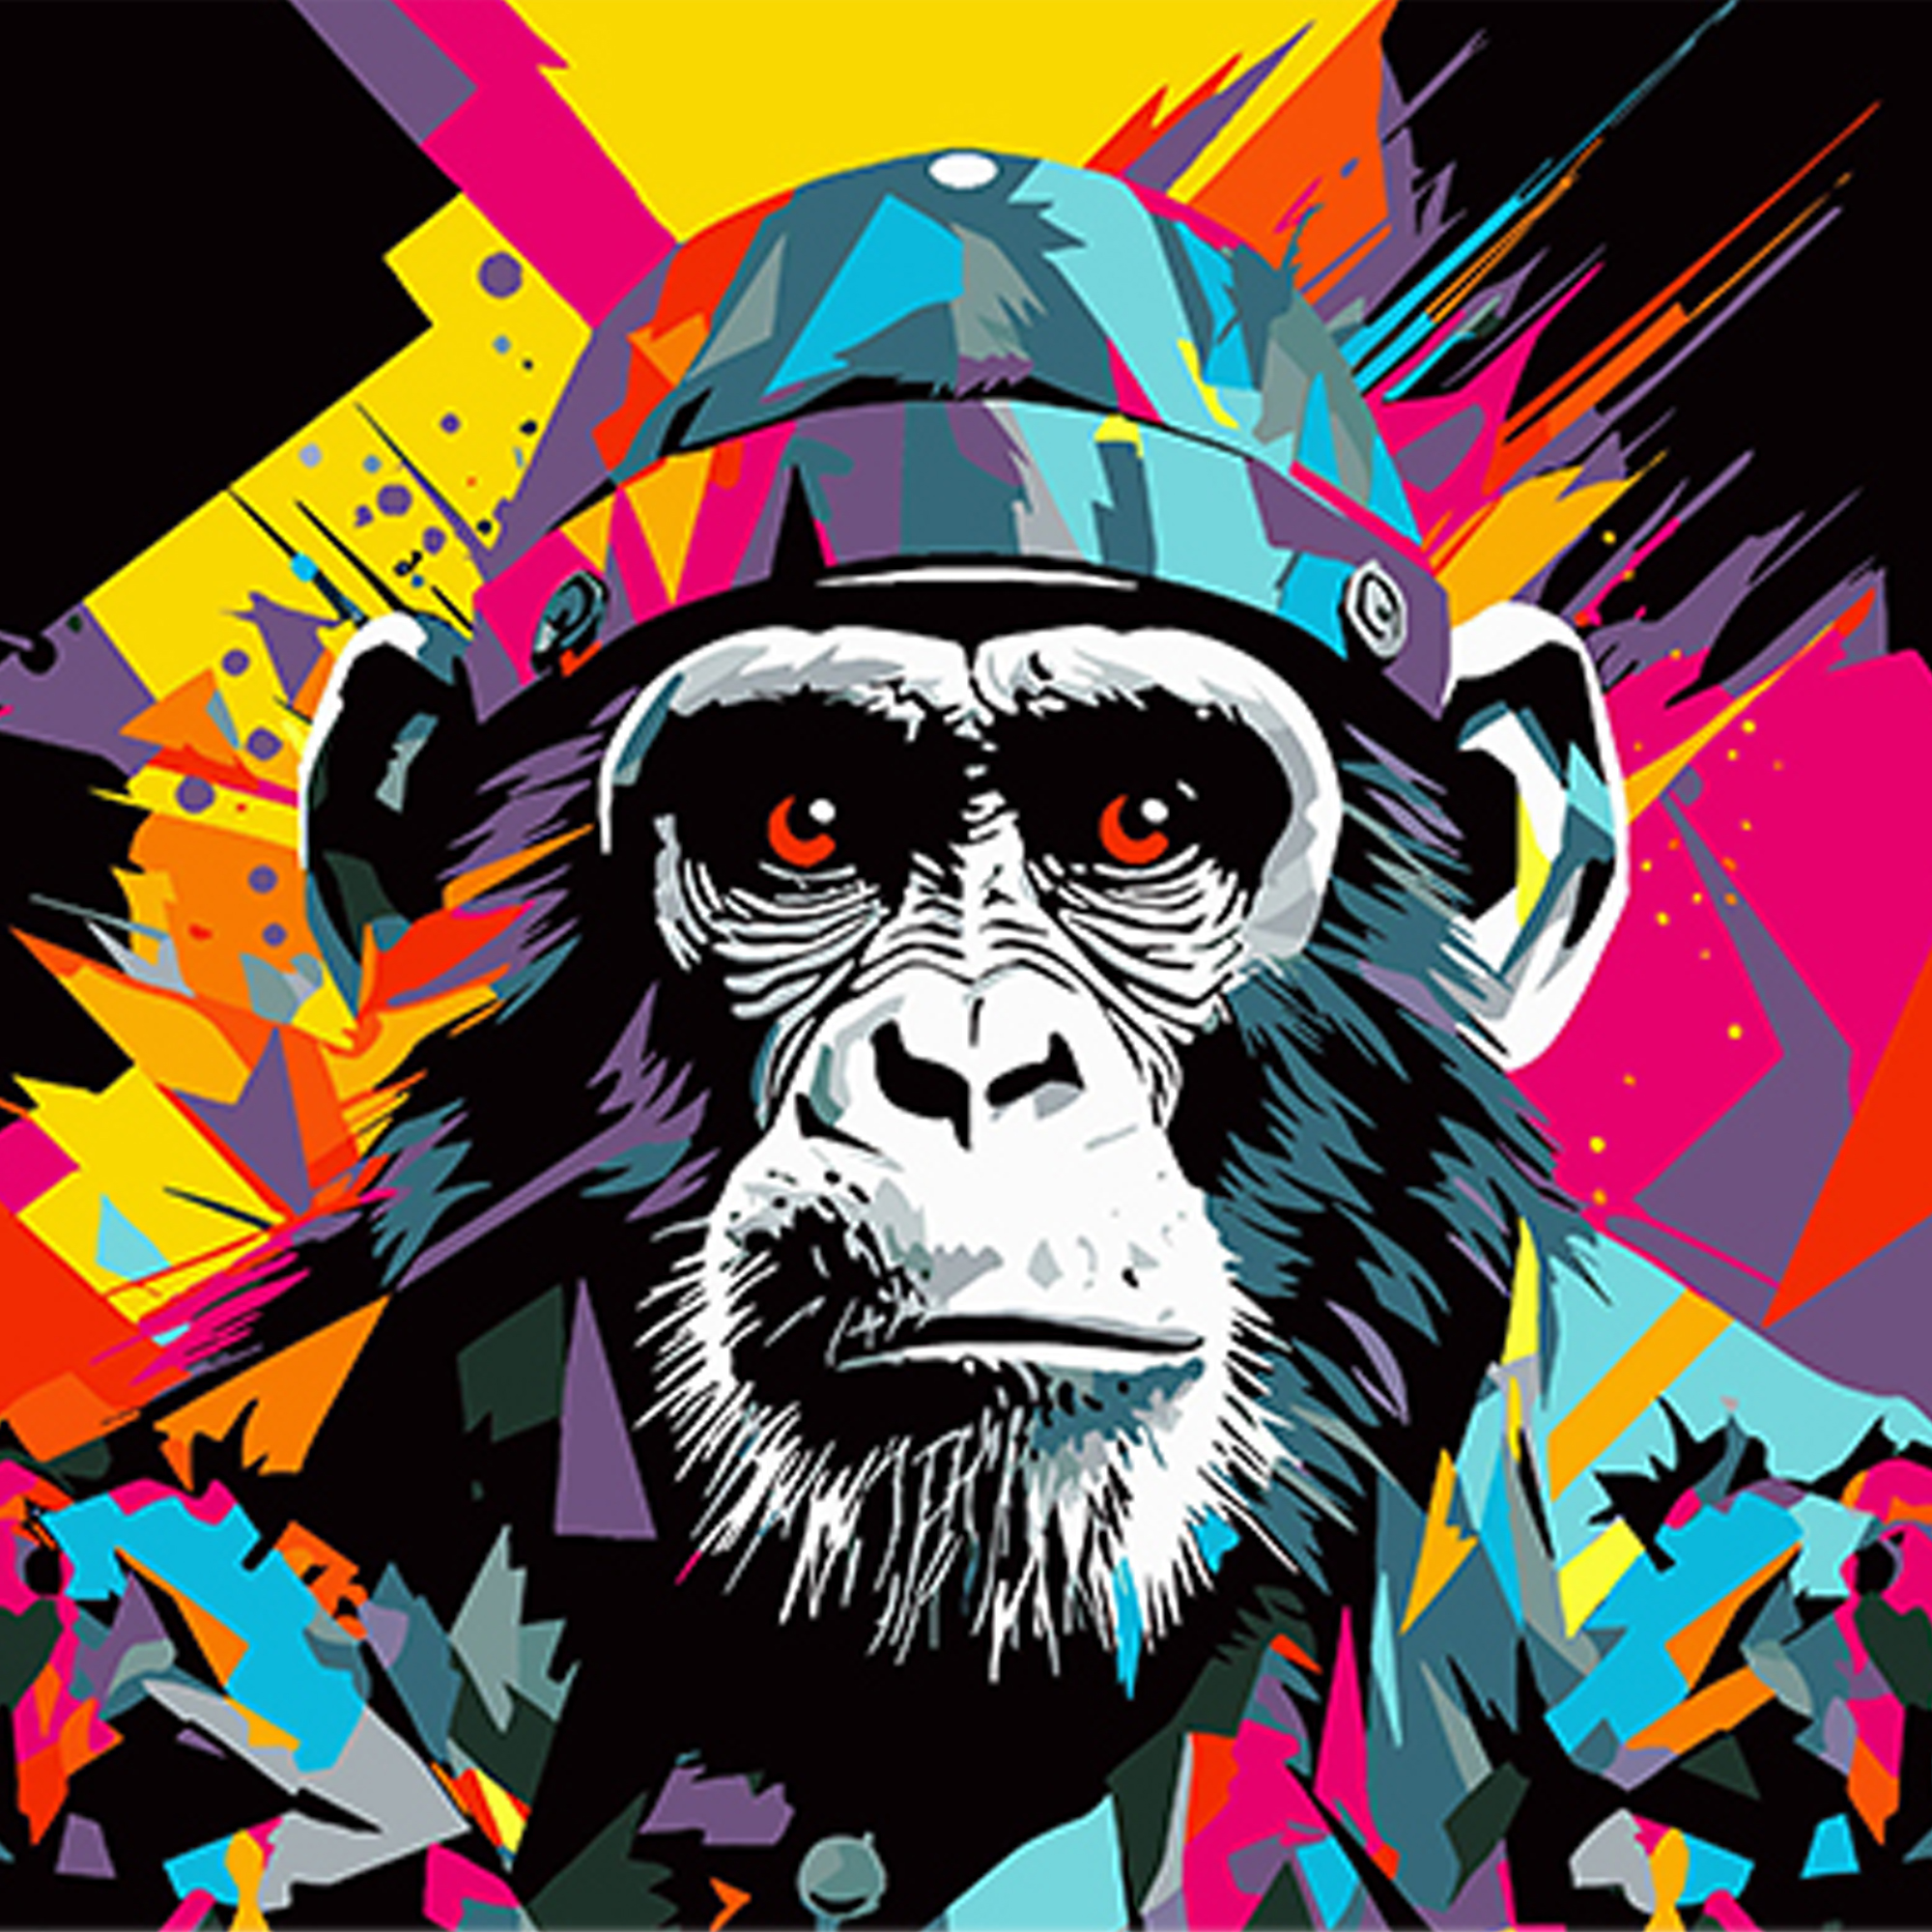 Malen nach Zahlen Strateg PREMIUM Militär-Schimpansen-Pop-Art auf schwarzem Hintergrund, Größe 40 x 40 cm (AV4040-42)